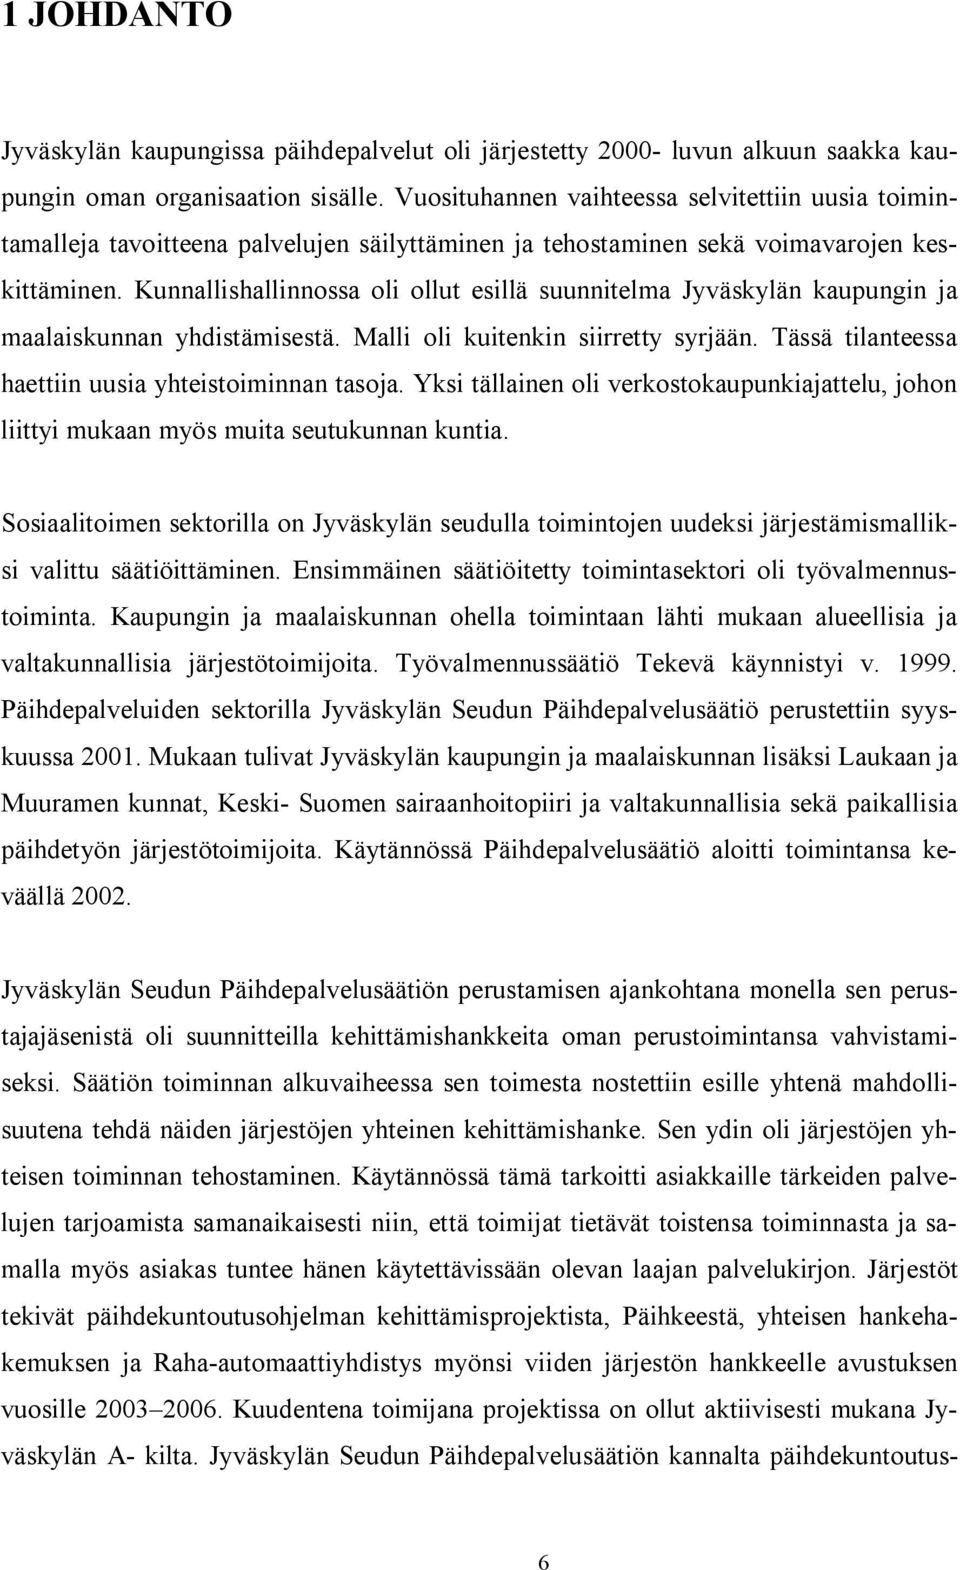 Kunnallishallinnossa oli ollut esillä suunnitelma Jyväskylän kaupungin ja maalaiskunnan yhdistämisestä. Malli oli kuitenkin siirretty syrjään. Tässä tilanteessa haettiin uusia yhteistoiminnan tasoja.